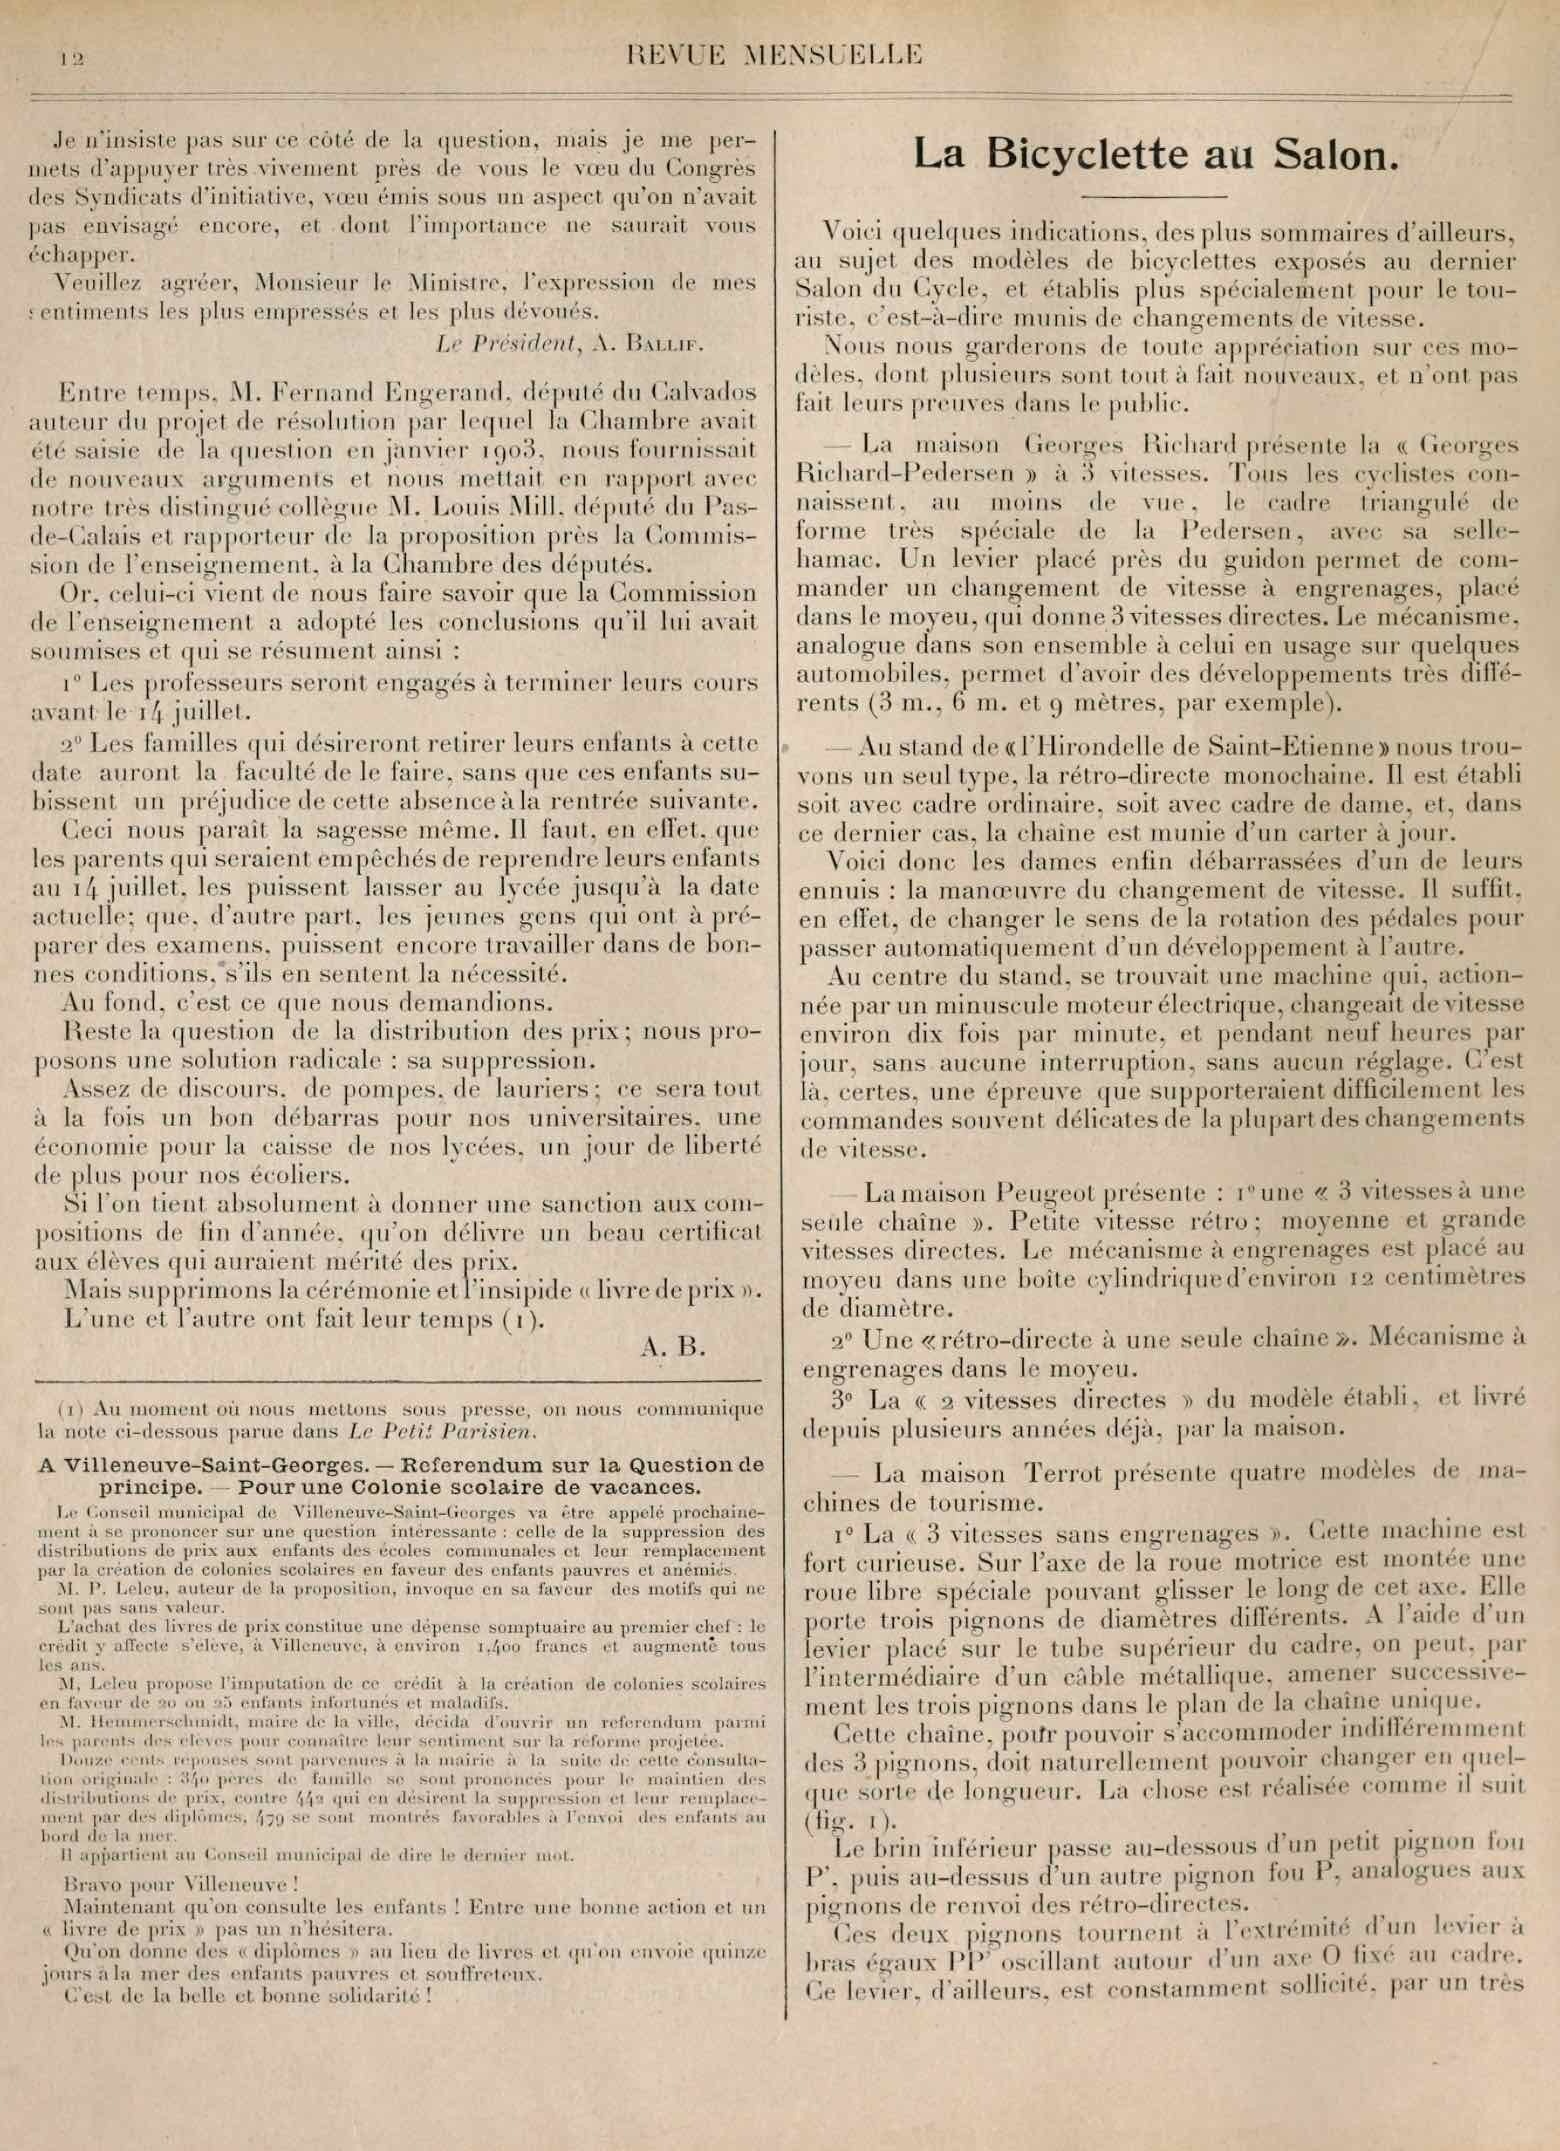 T.C.F. Revue Mensuelle January 1905 - La Bicyclette au Salon scan 1 main image